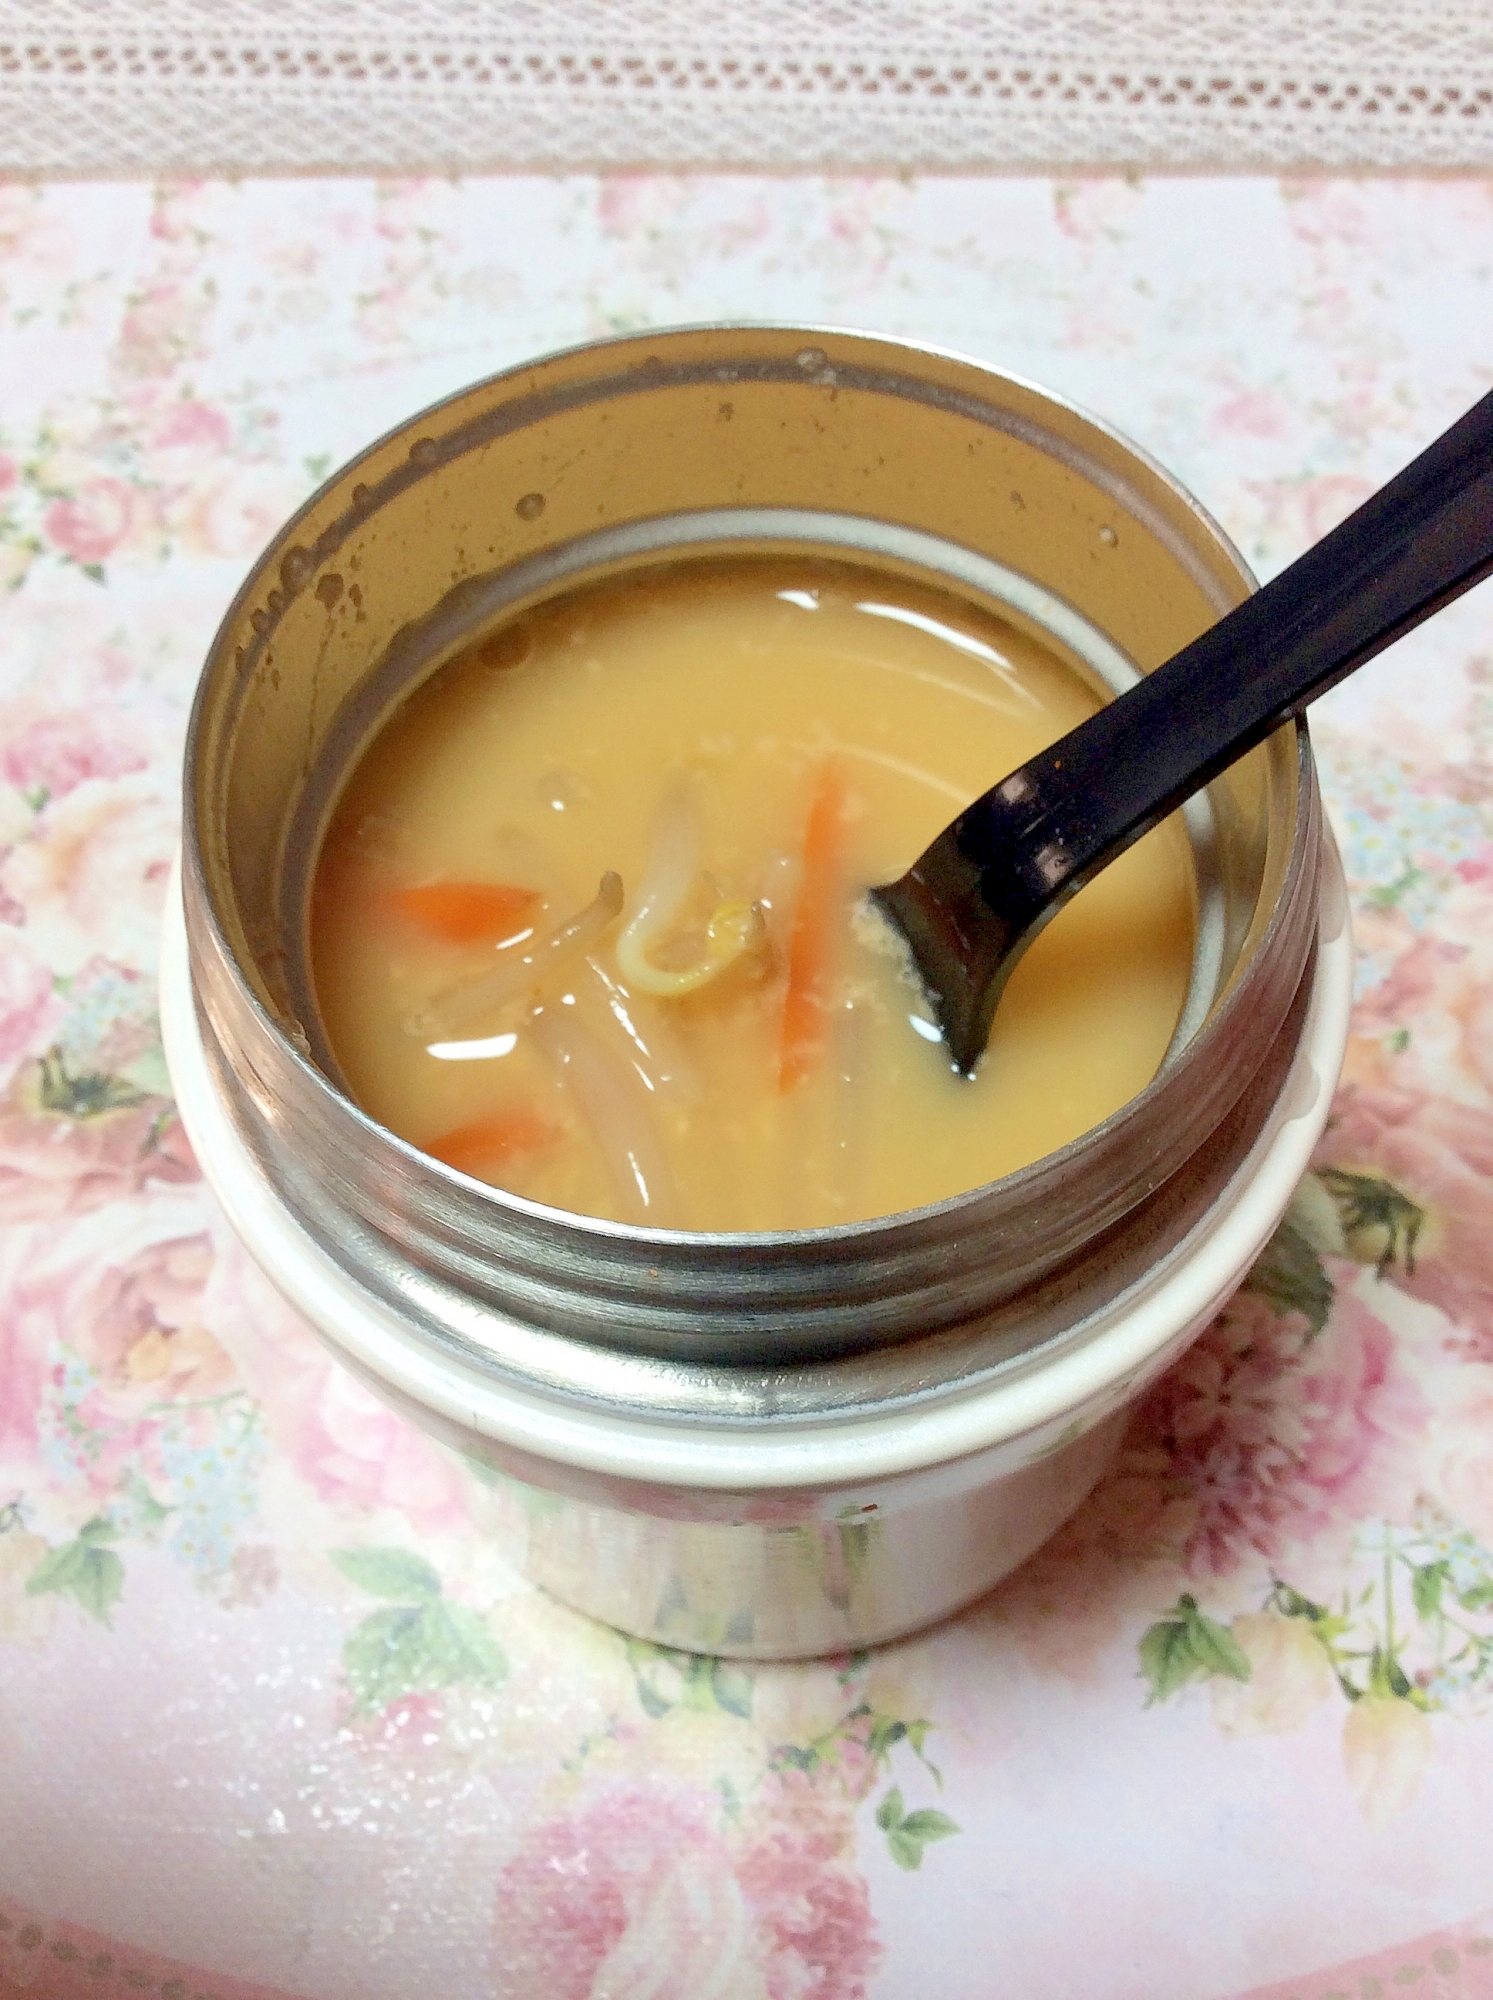 スープジャーで♪もやしと人参のピリ辛かき玉スープ